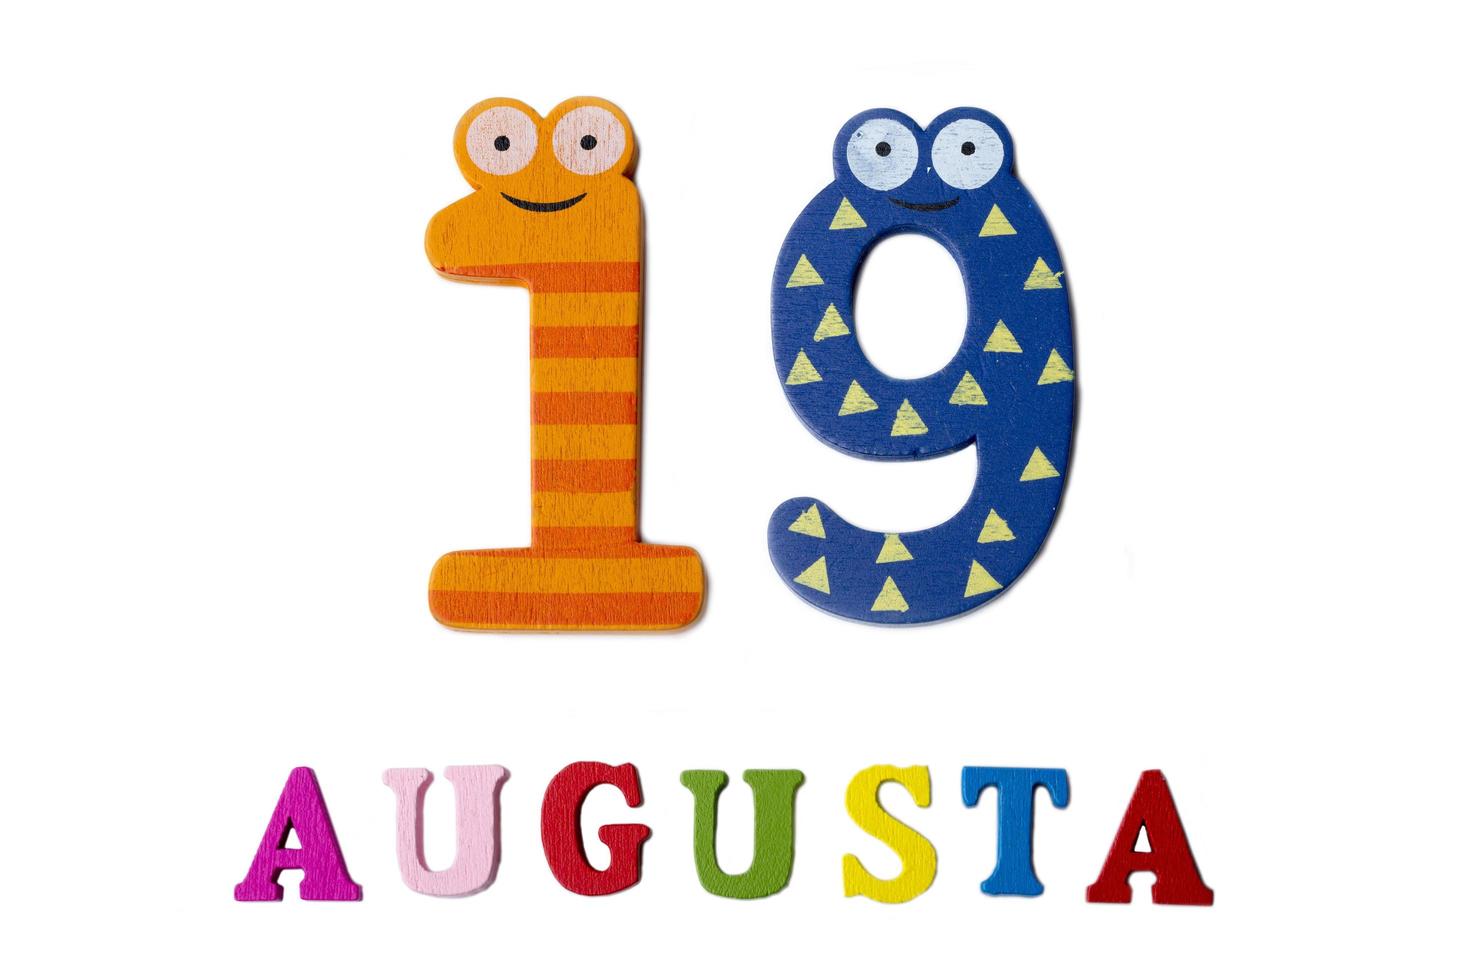 19 de agosto imagen del 19 de agosto, primer plano de números y letras sobre fondo blanco. foto